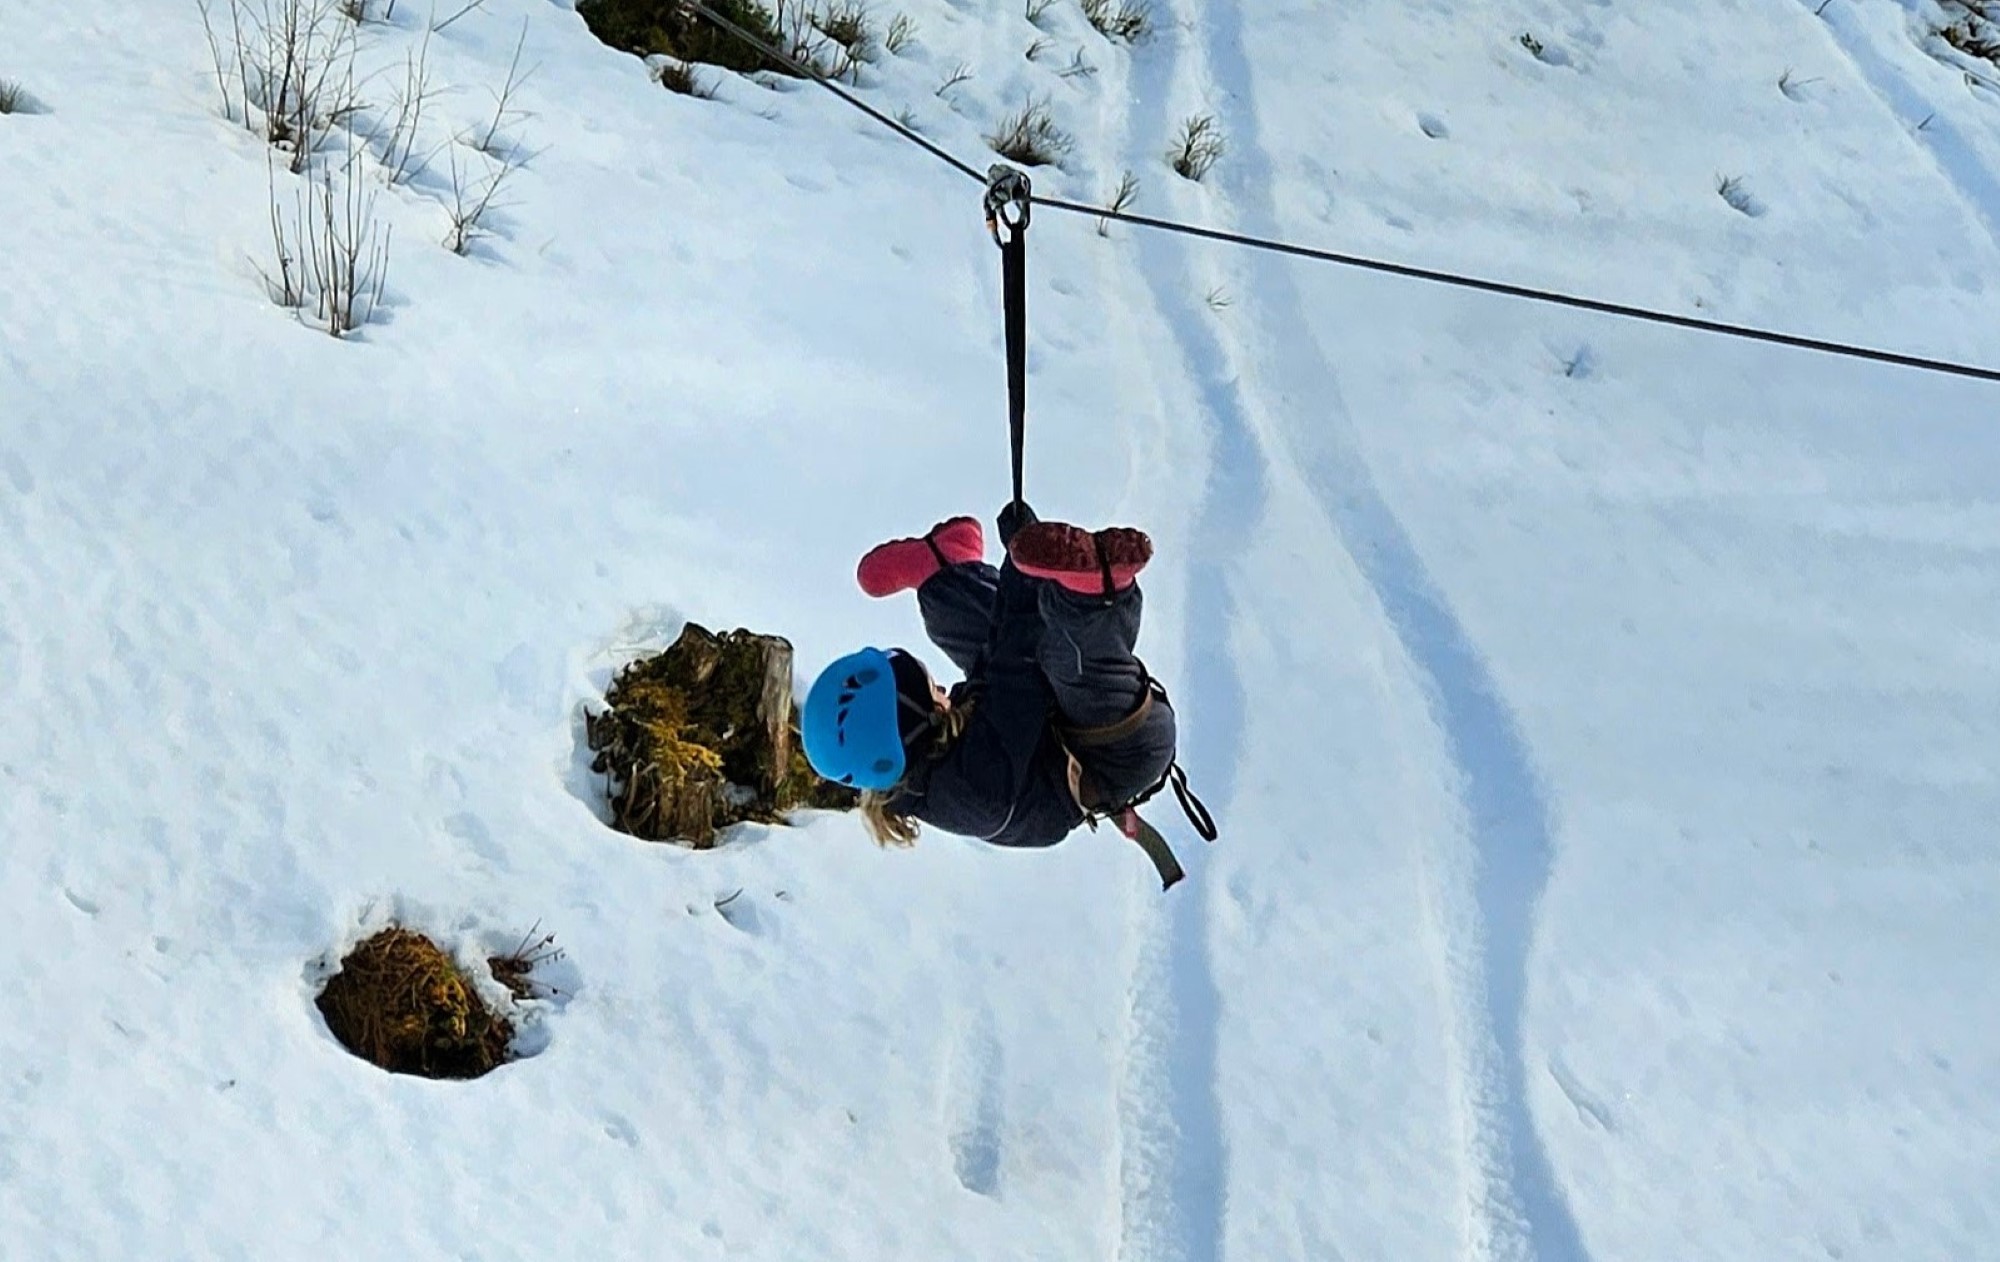 Jente henger i zipline over snødekt bakke